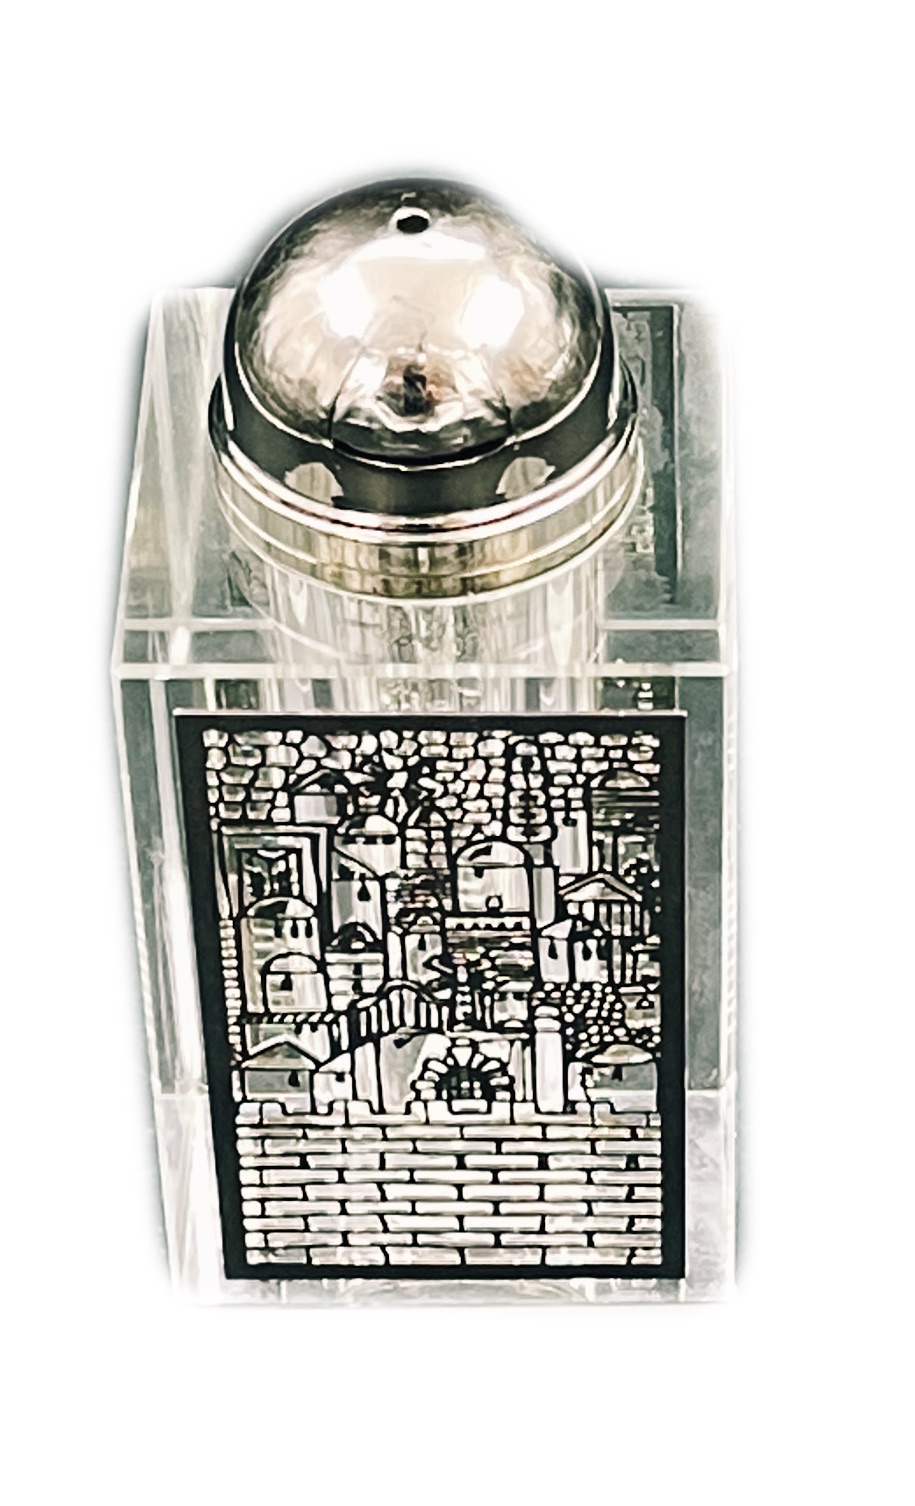 Salière / Poivrière en cristal, décorée avec plaque métallique ciselée au laser